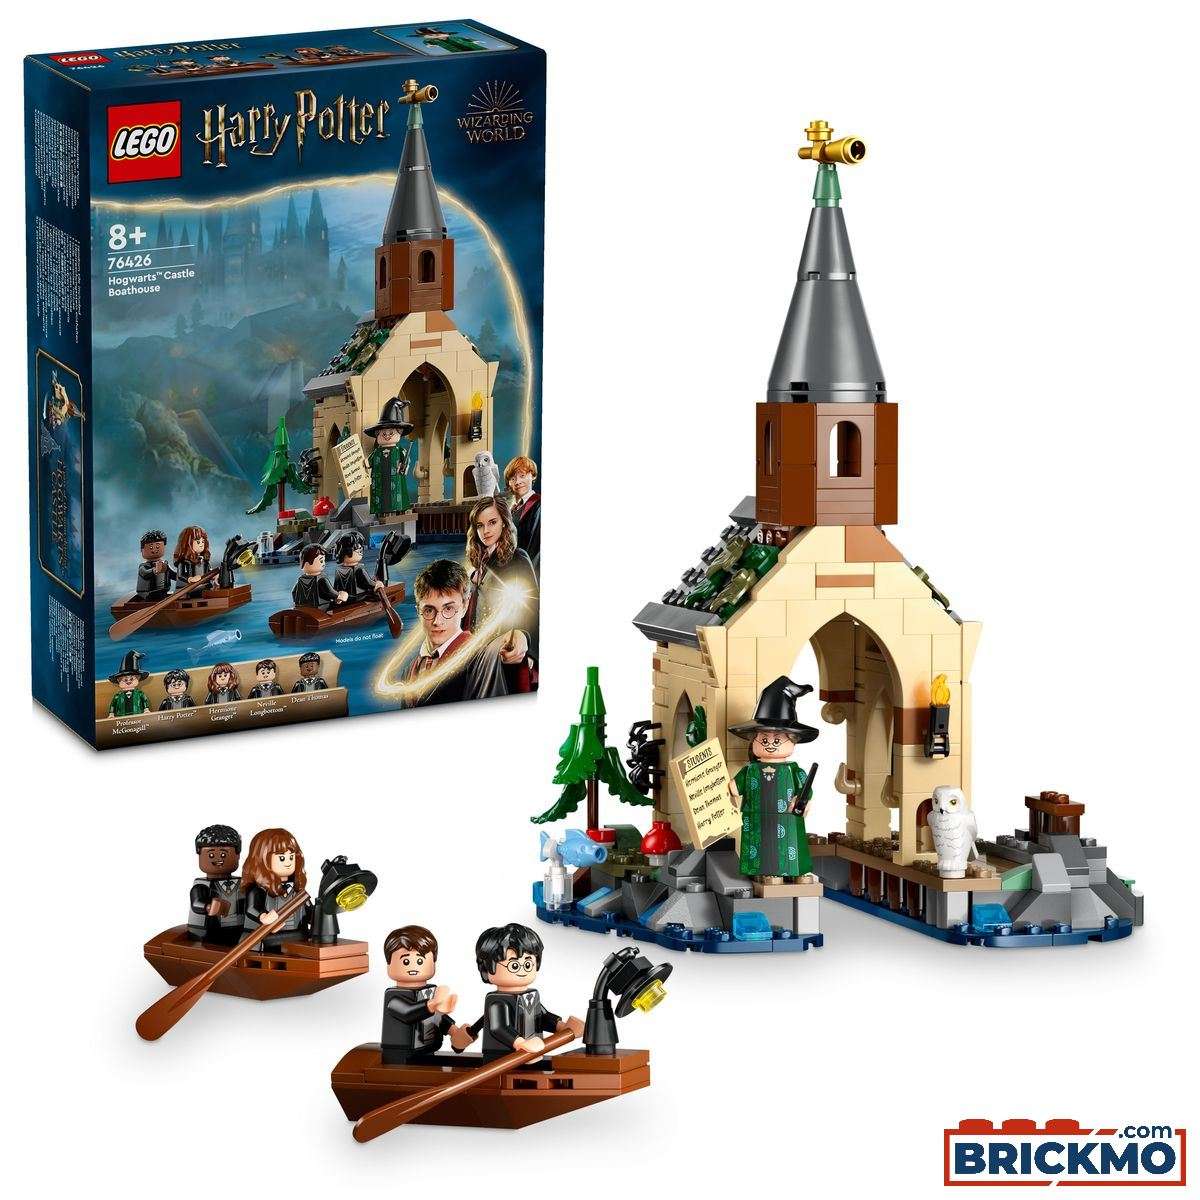 LEGO Harry Potter 76426 Hogwarts Castle Boathouse 76426